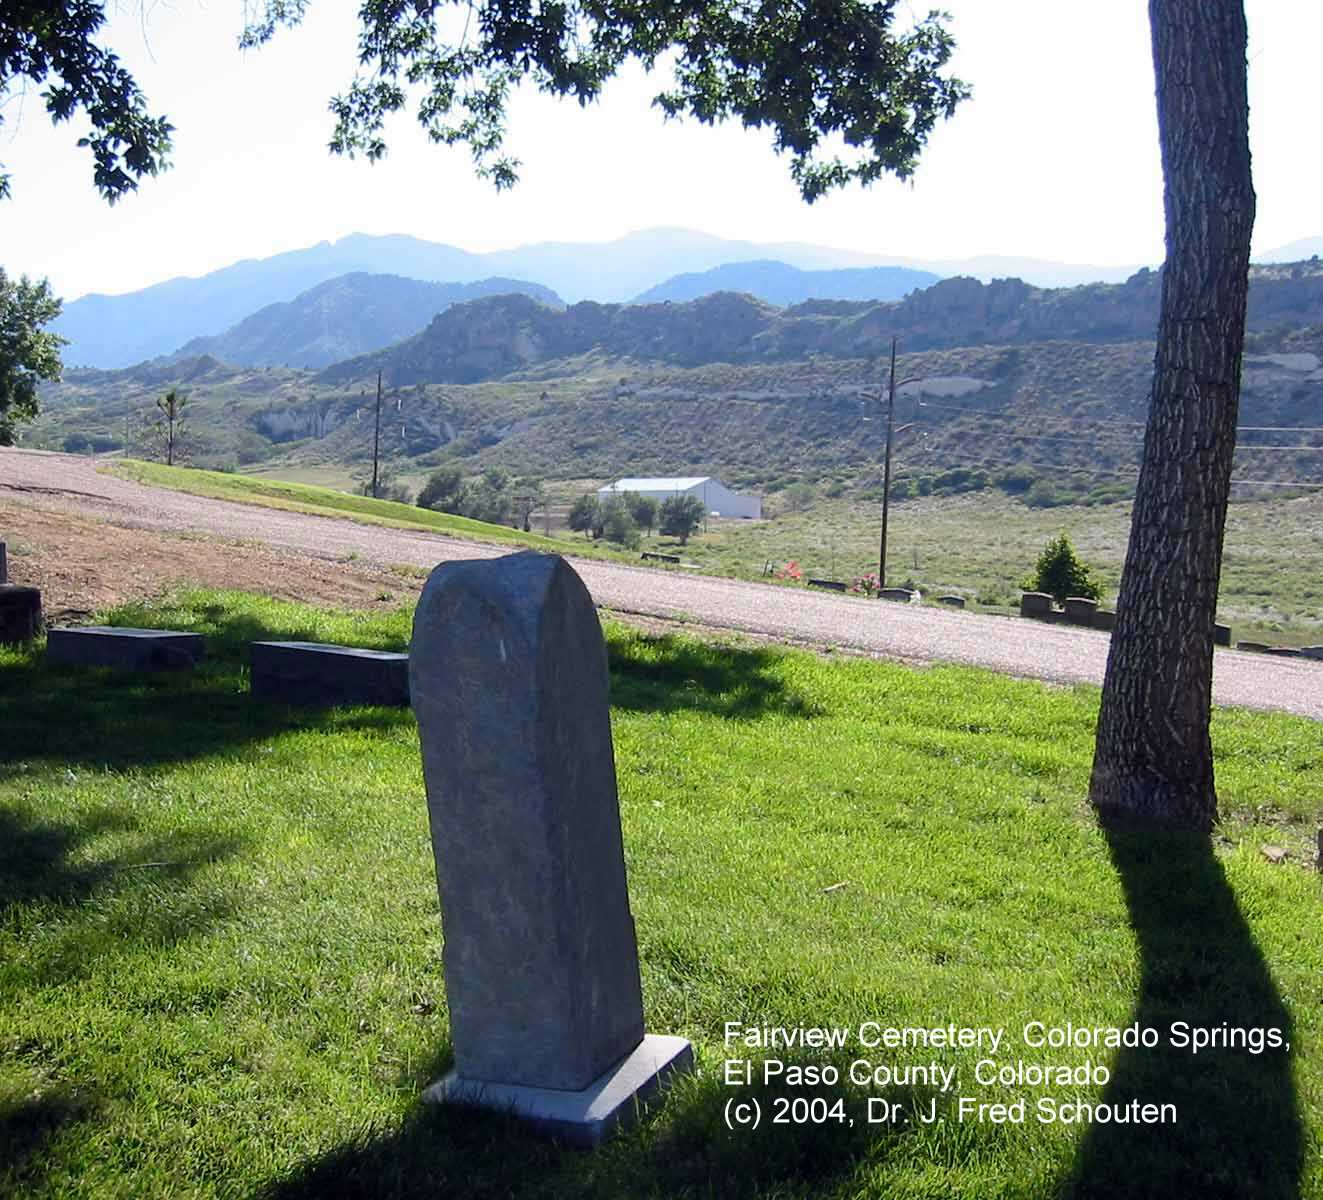 Fairview Cemetery Tombstone Photos, El Paso County, Colorado